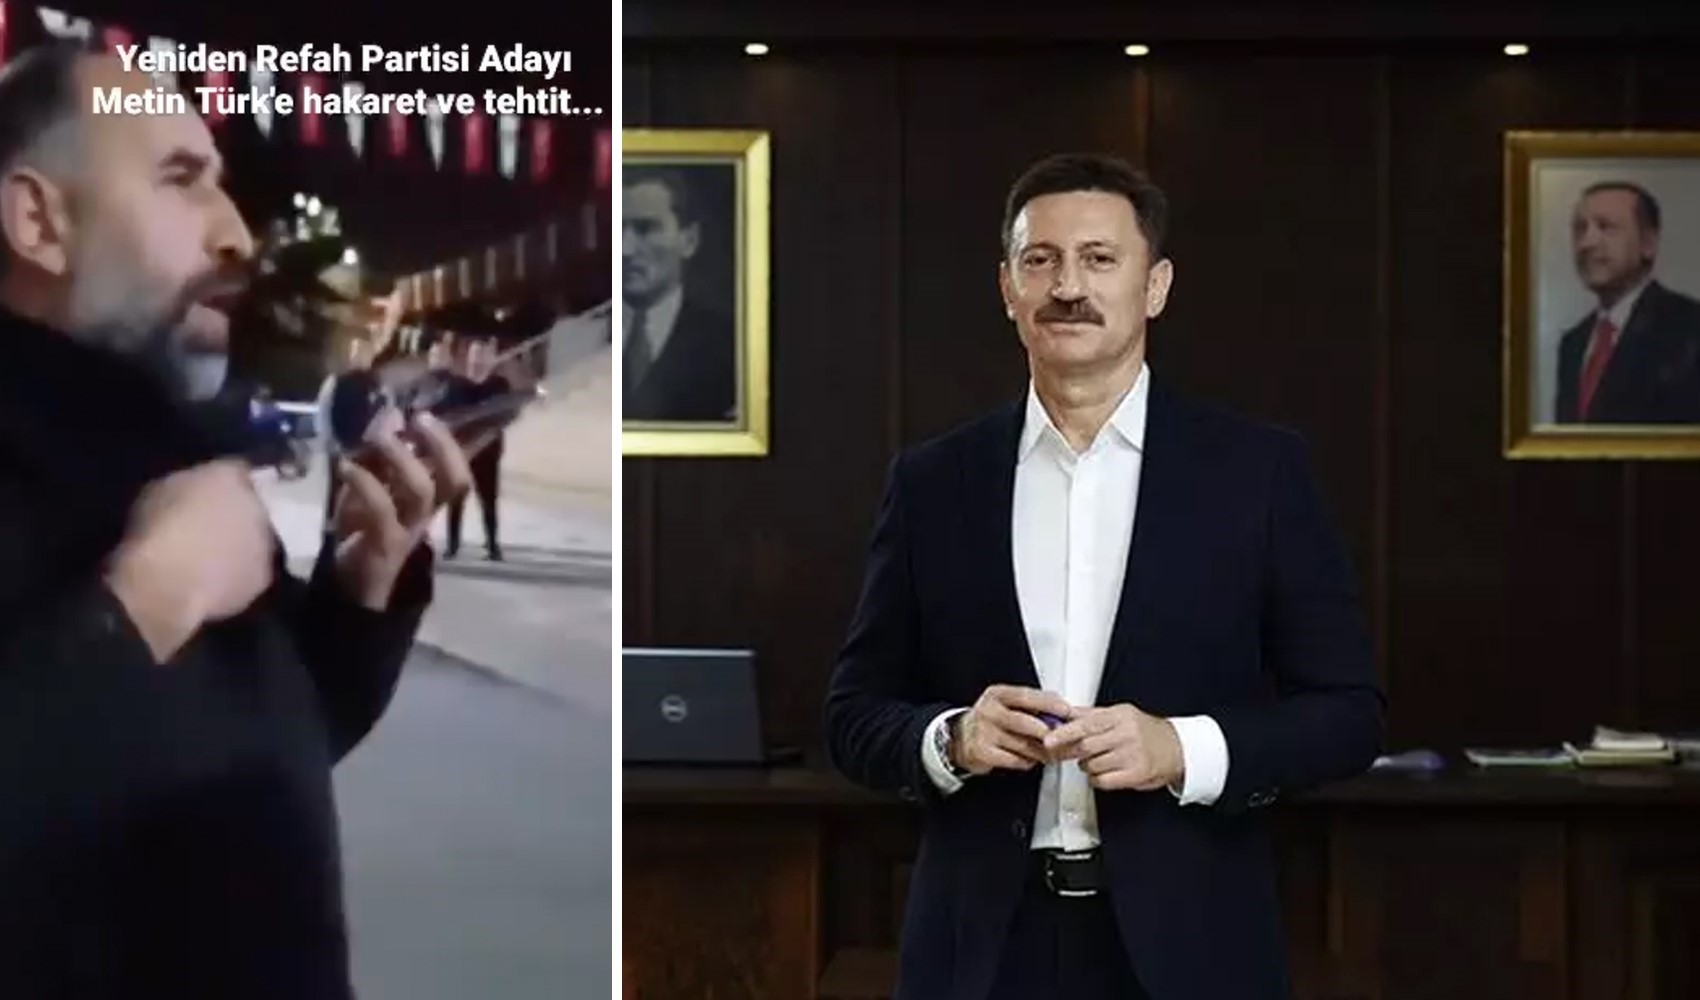 AKP’li belediye başkanı Hakan Bahadır'dan YRP’li aday Metin Türk'e tehdit! 'Kanun benim, gelirim seni fena yaparım'